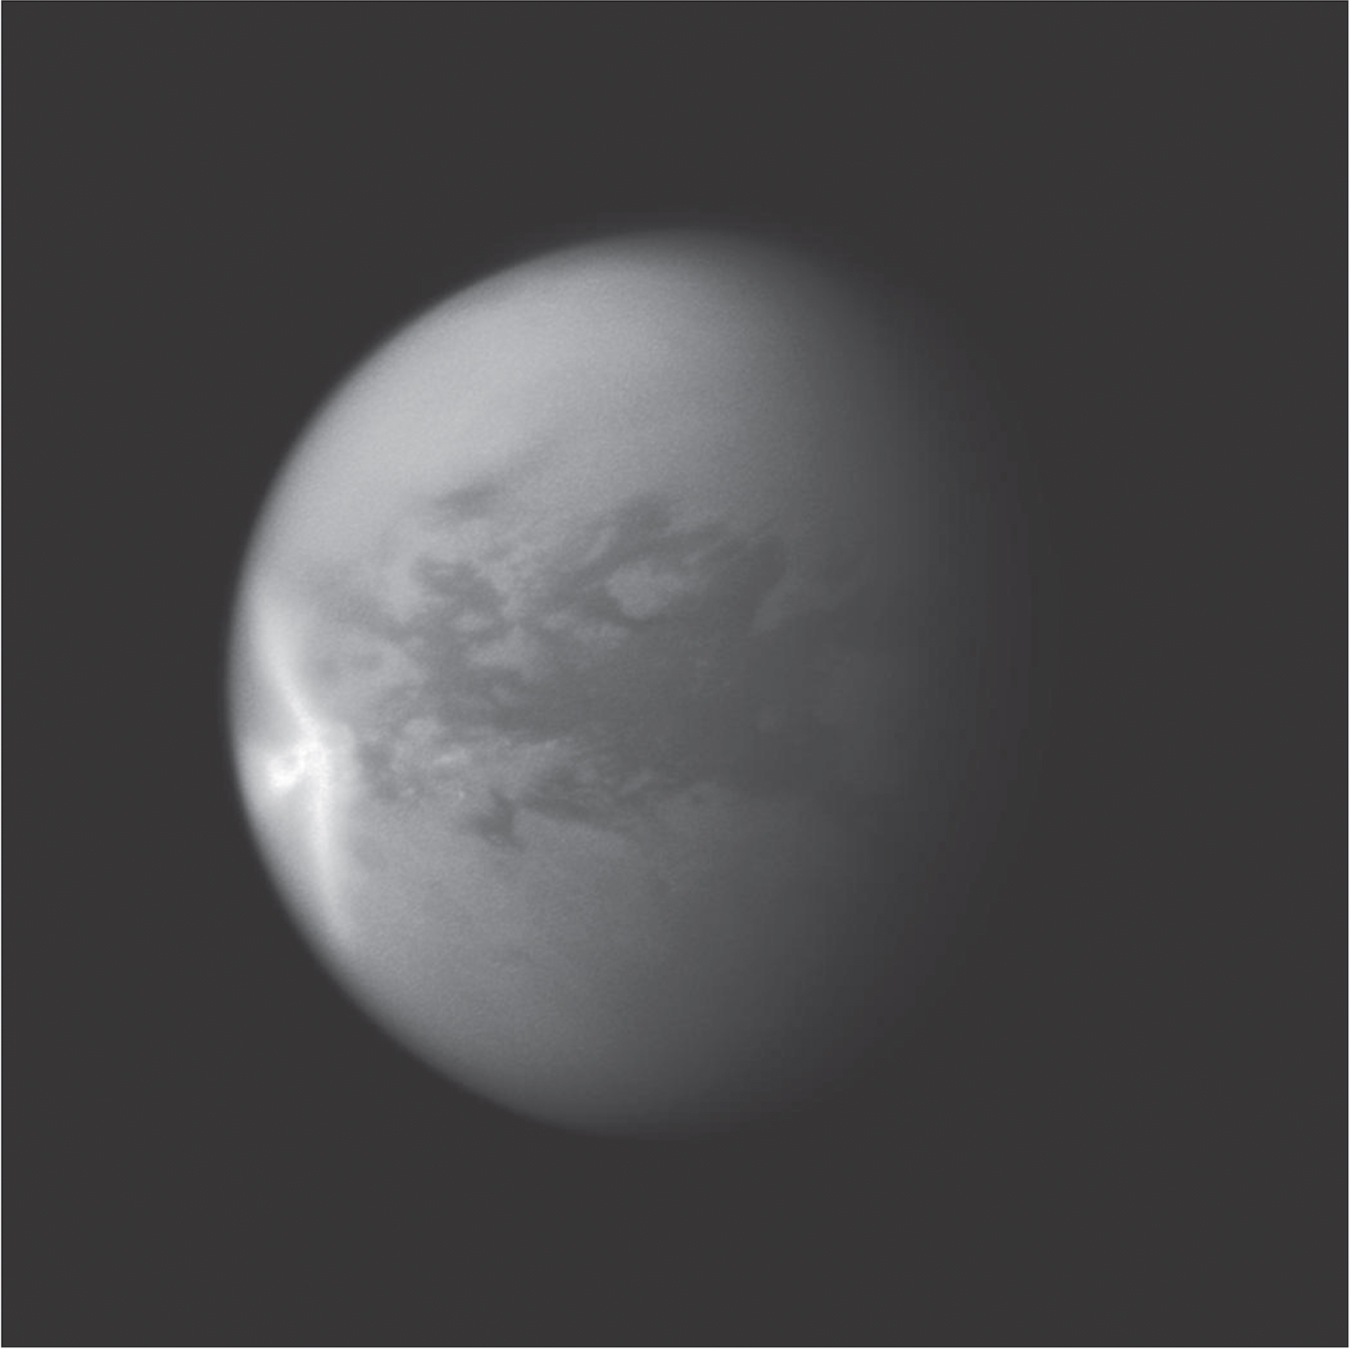 卡西尼号大幅增加了我们对泰坦云的认识，揭示了当中意想不到的形态，例如在2011年出现的巨大「箭头形」云（图中左侧）。降雨使超过500,000平方公里的陆地范围变暗。甲烷蒸发掉后，局部地区开始重新变亮。                                          图片鸣谢: NASA/JPL/STScI. Image PIA12817